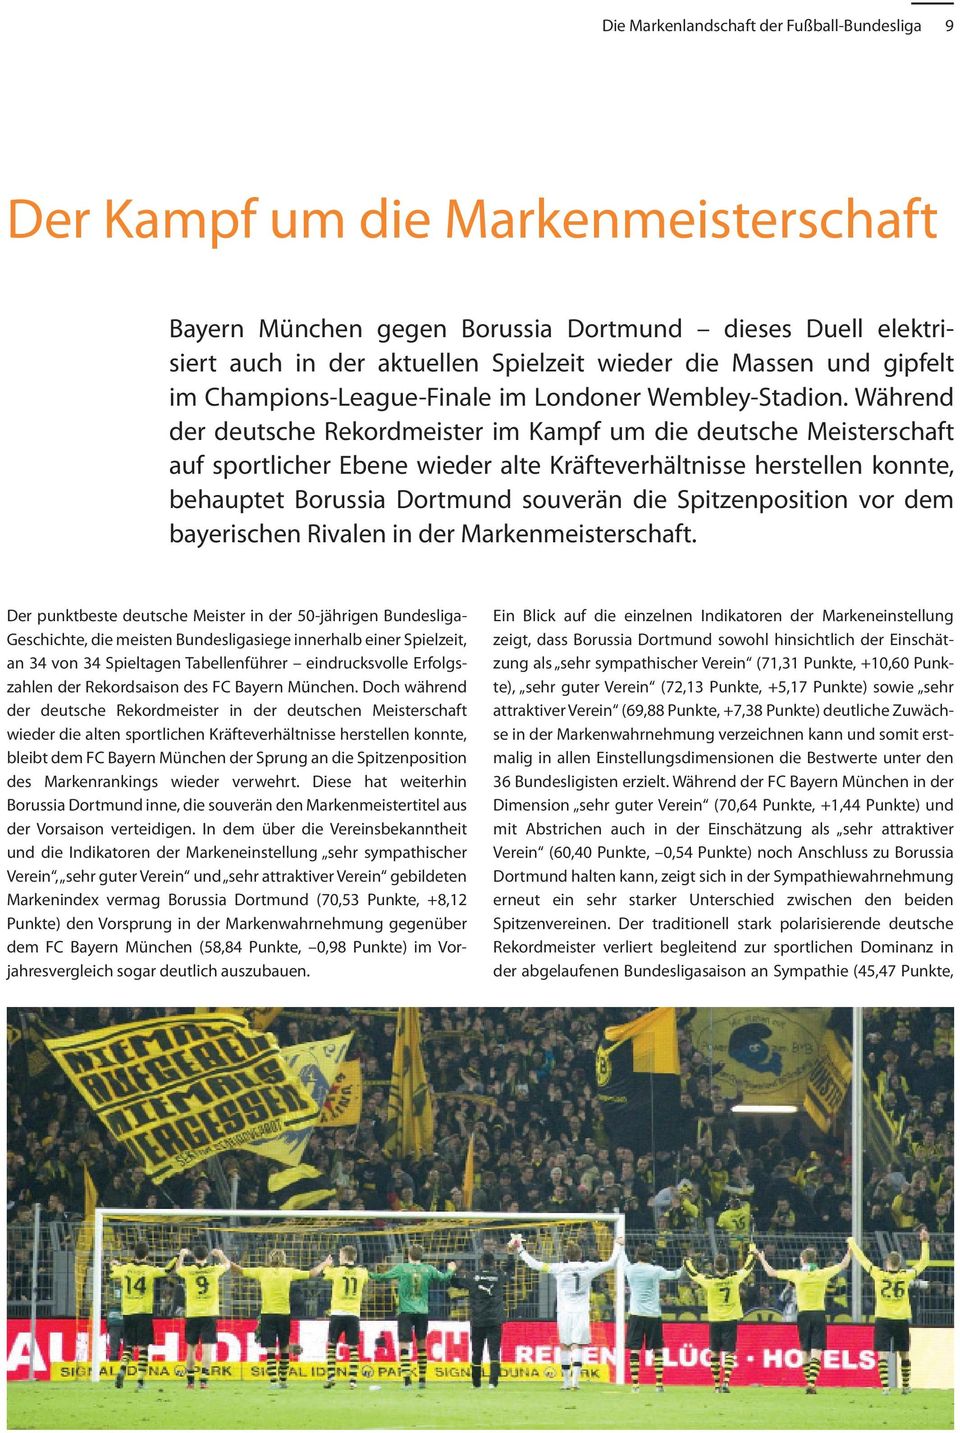 Während der deutsche Rekordmeister im Kampf um die deutsche Meisterschaft auf sportlicher Ebene wieder alte Kräfteverhältnisse herstellen konnte, behauptet Borussia Dortmund souverän die